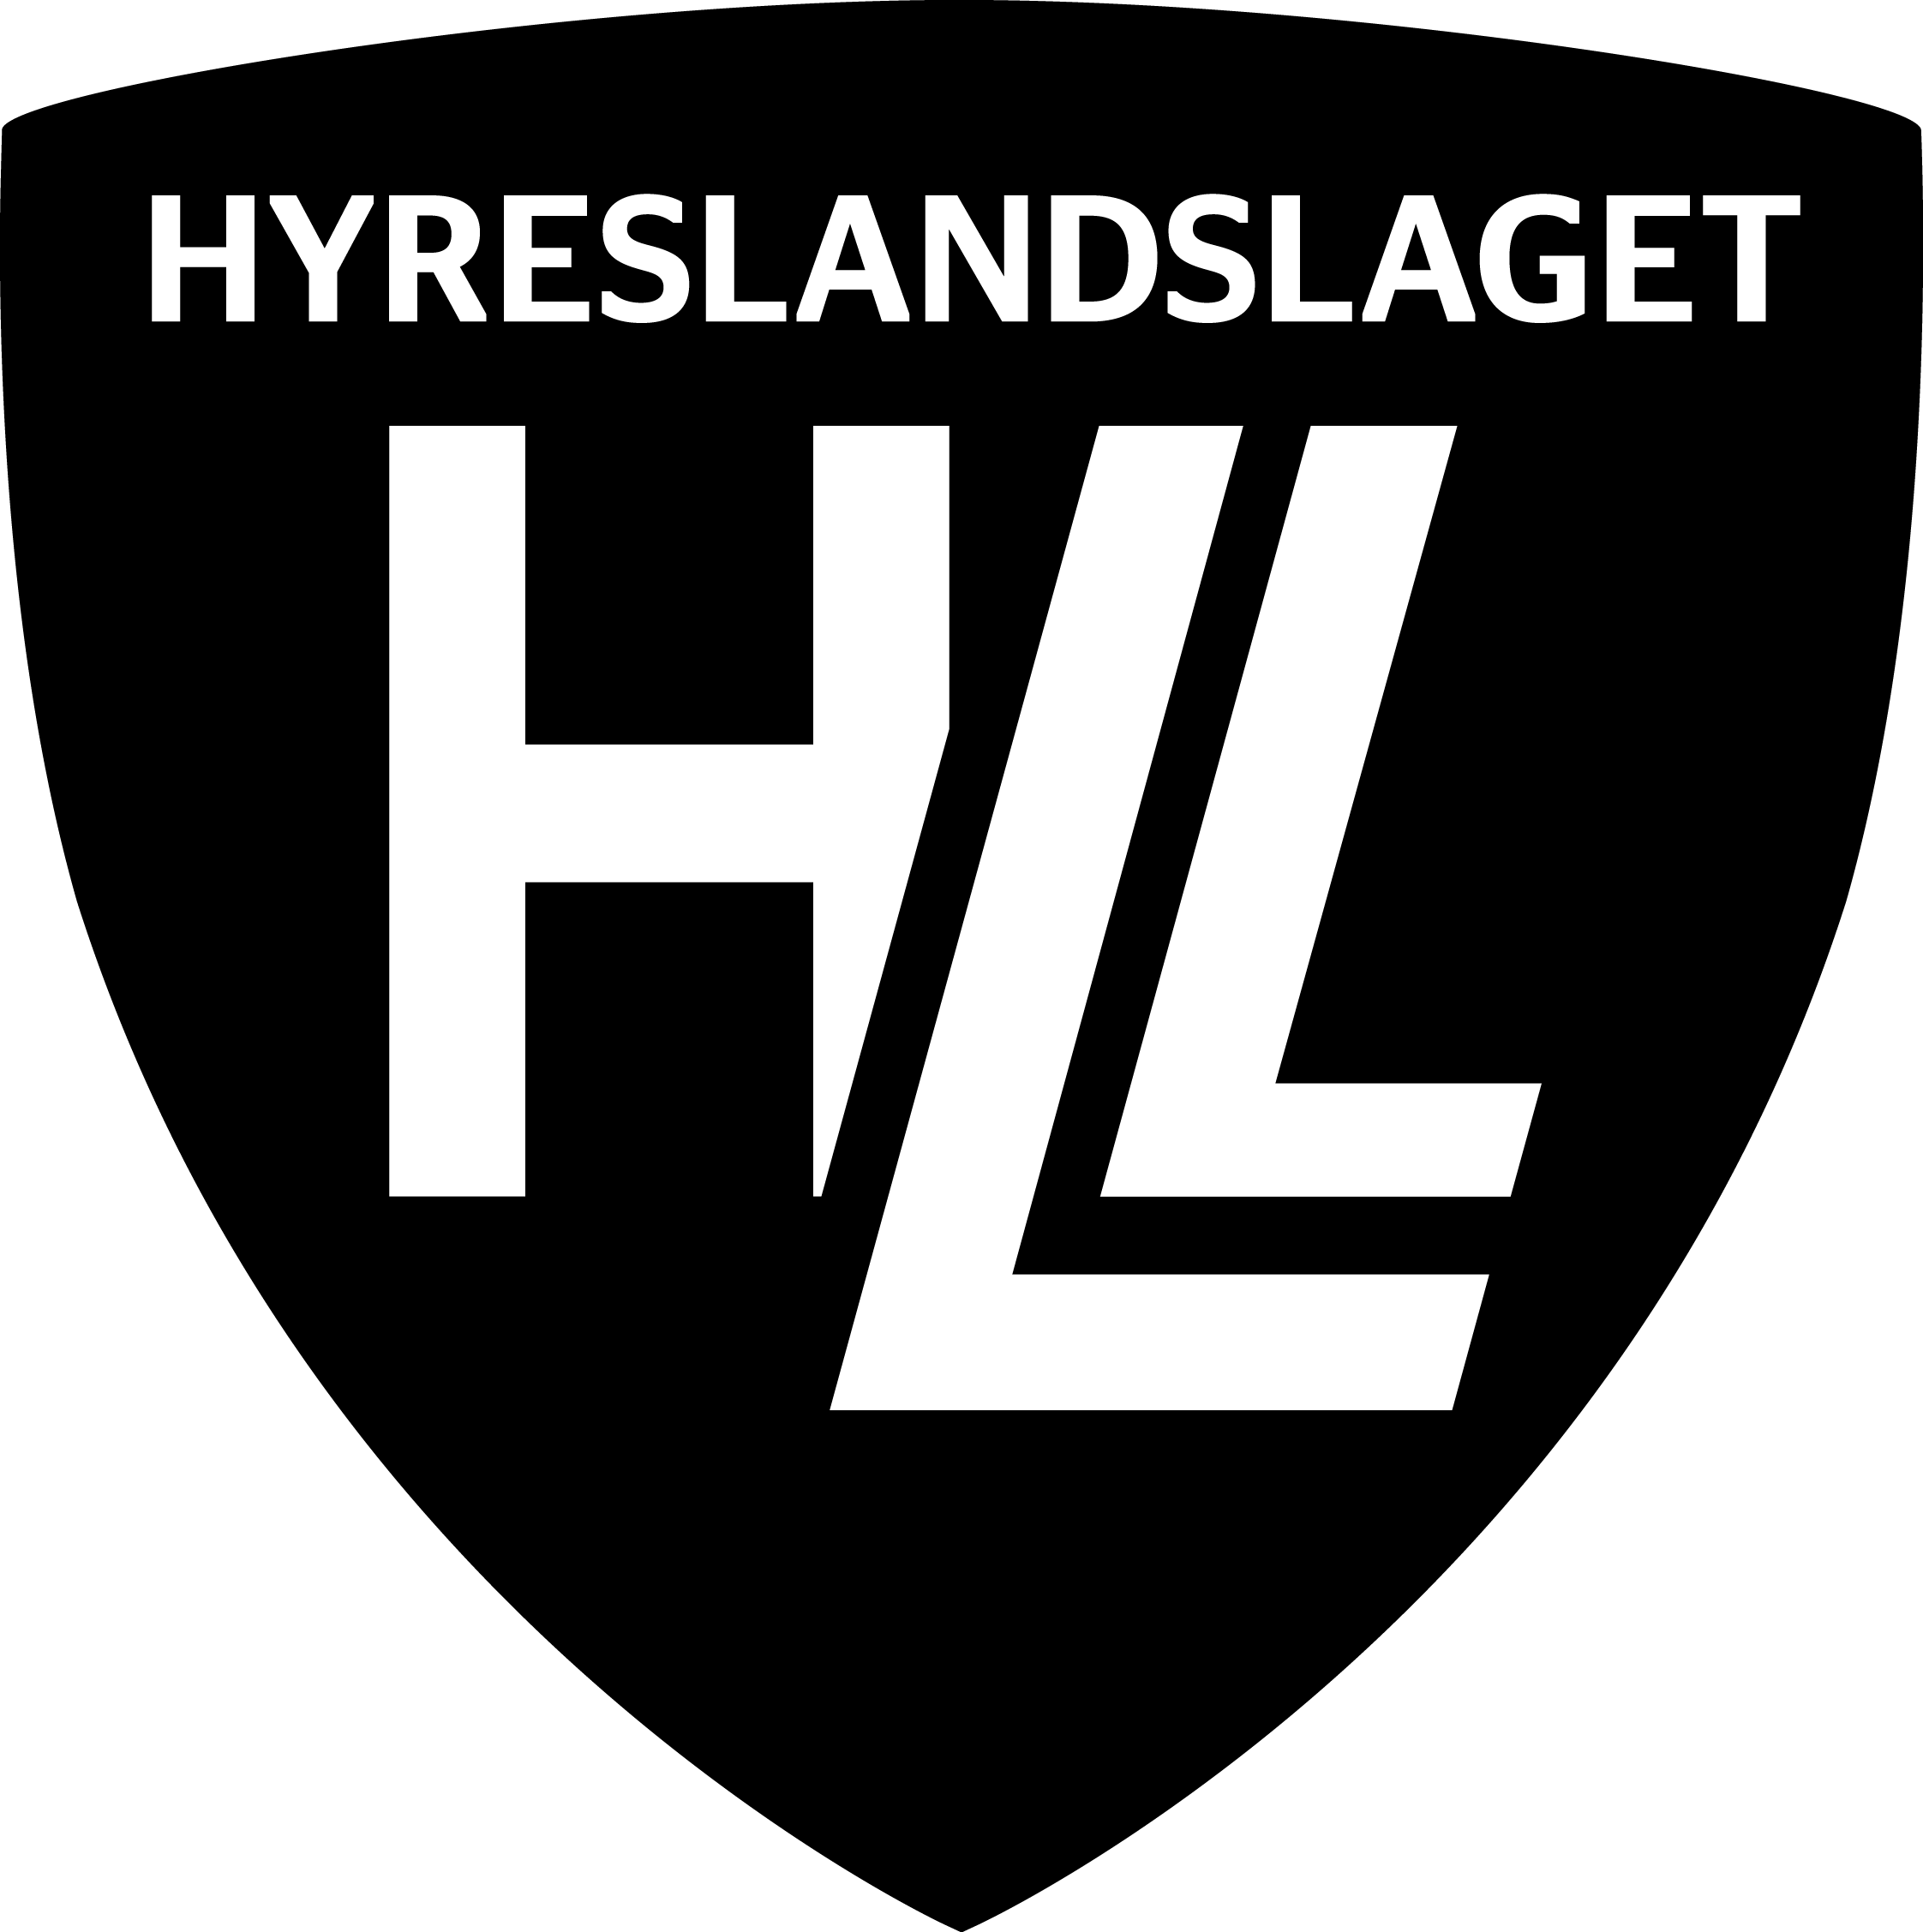 HLL HYRESLANDSLAGET